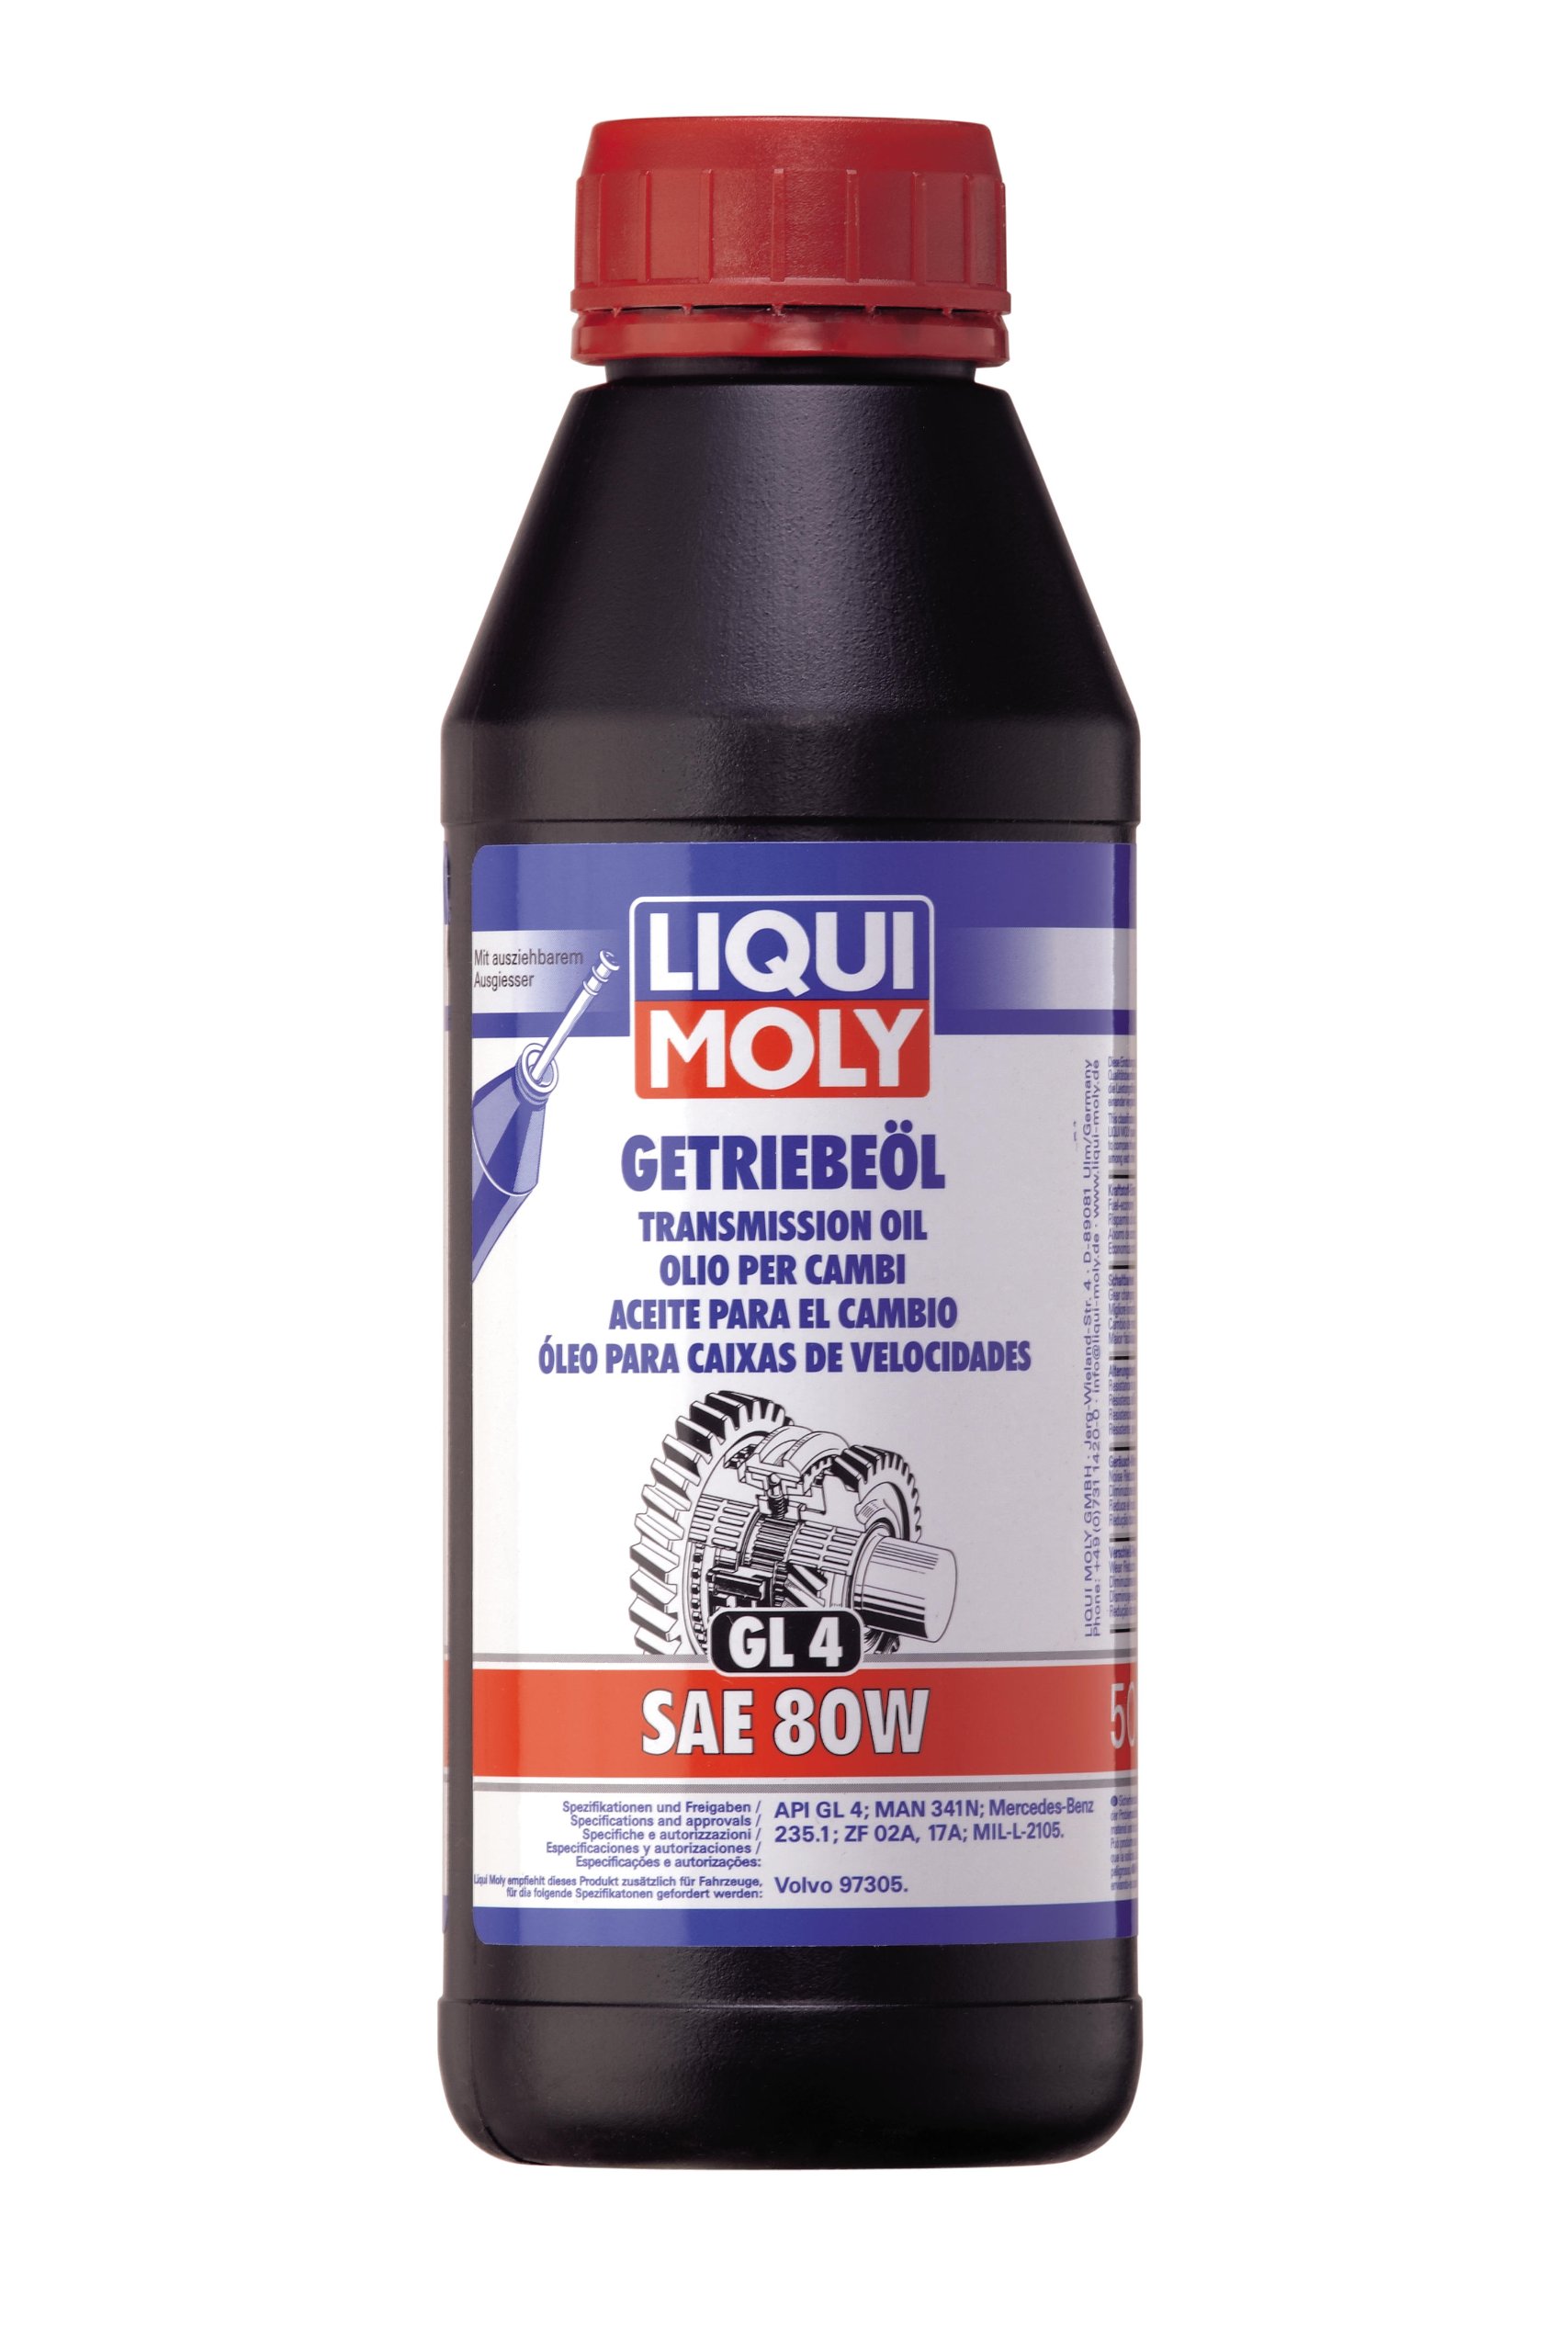 LIQUI MOLY Getriebeöl (GL4) SAE 80W | 500 ml | Getriebeöl | Hydrauliköl | Art.-Nr.: 1401 von Liqui Moly